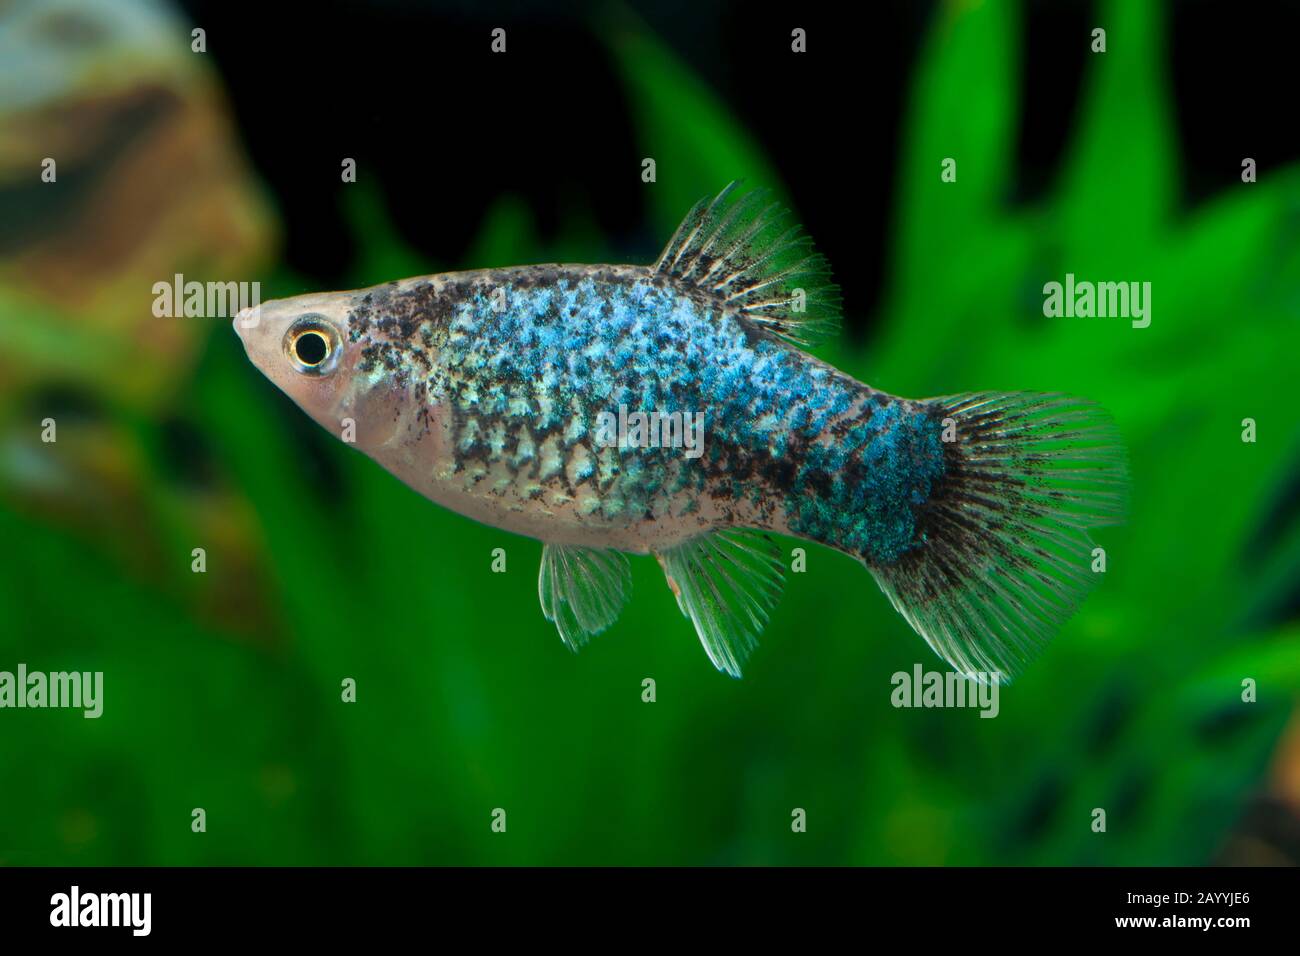 Platyfish méridional (Xiphophorus maculatus), forme de reproduction Calico Blau Banque D'Images